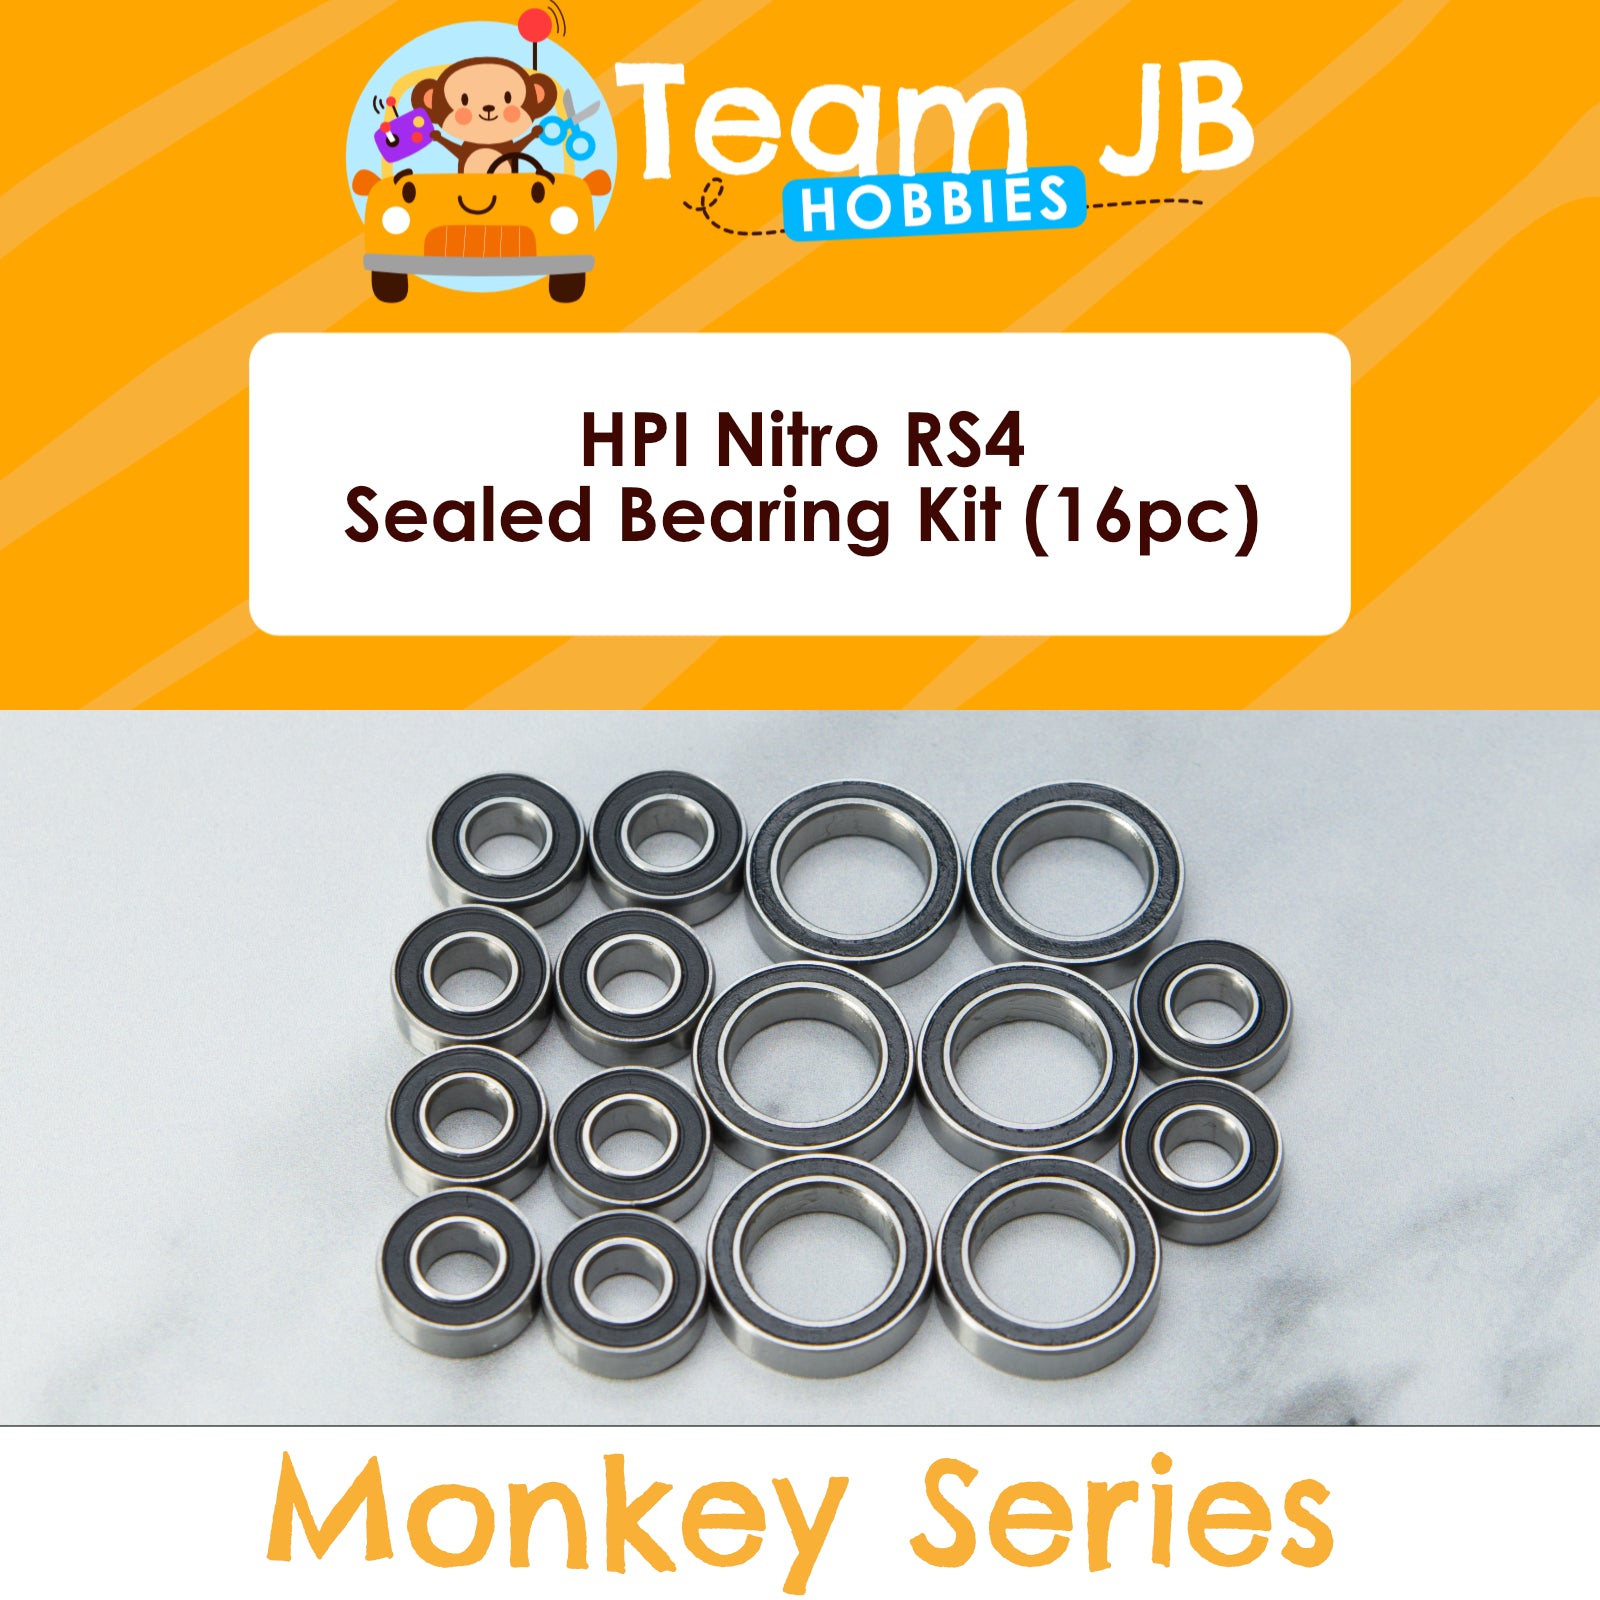 HPI Nitro RS4 - Sealed Bearing Kit